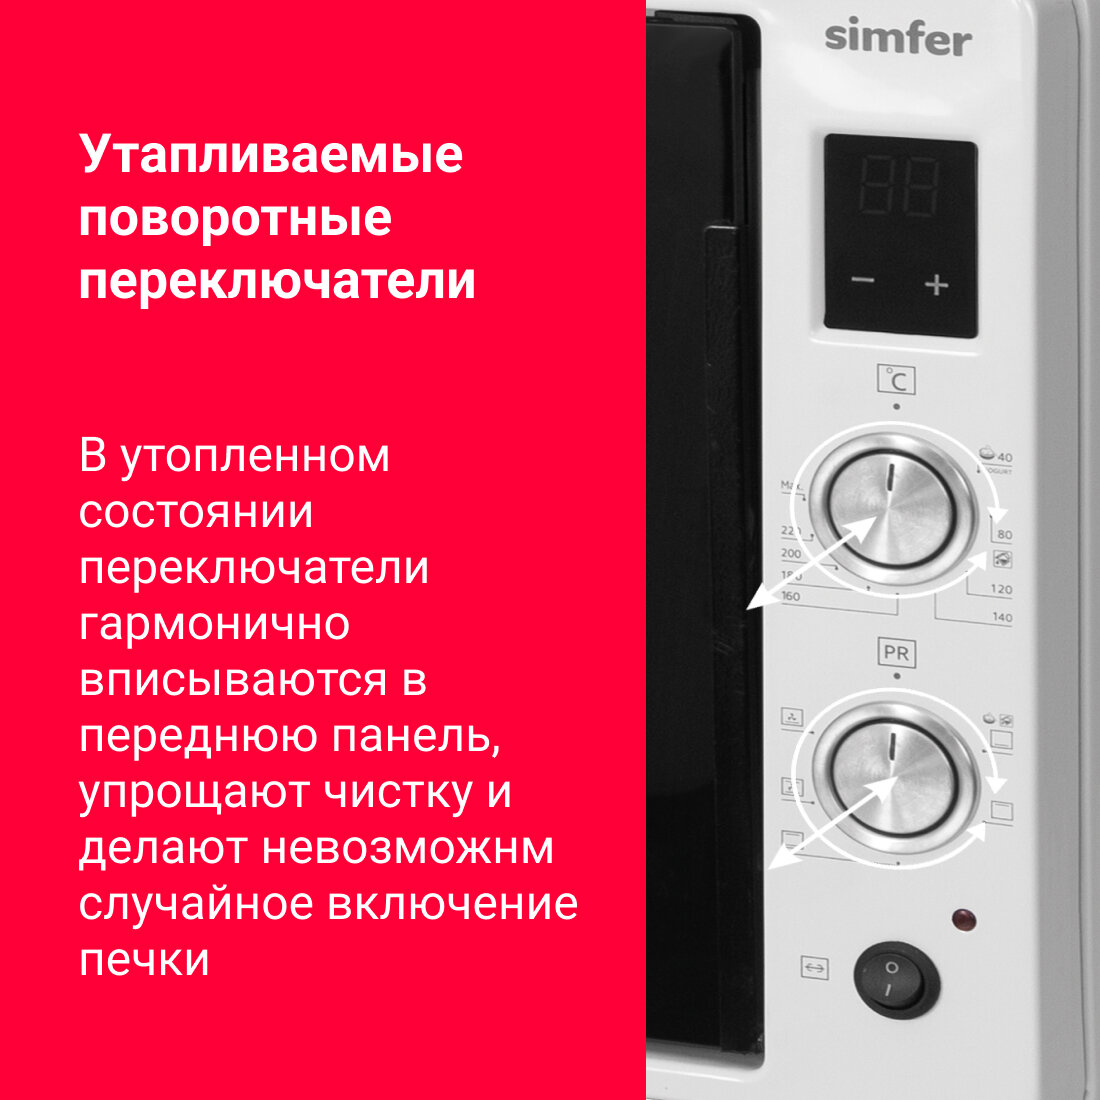 Мини-печь Simfer M7070 (6 режимов, конвекция, двойное стекло, цифровой дисплей, цвет серый) - фото №10